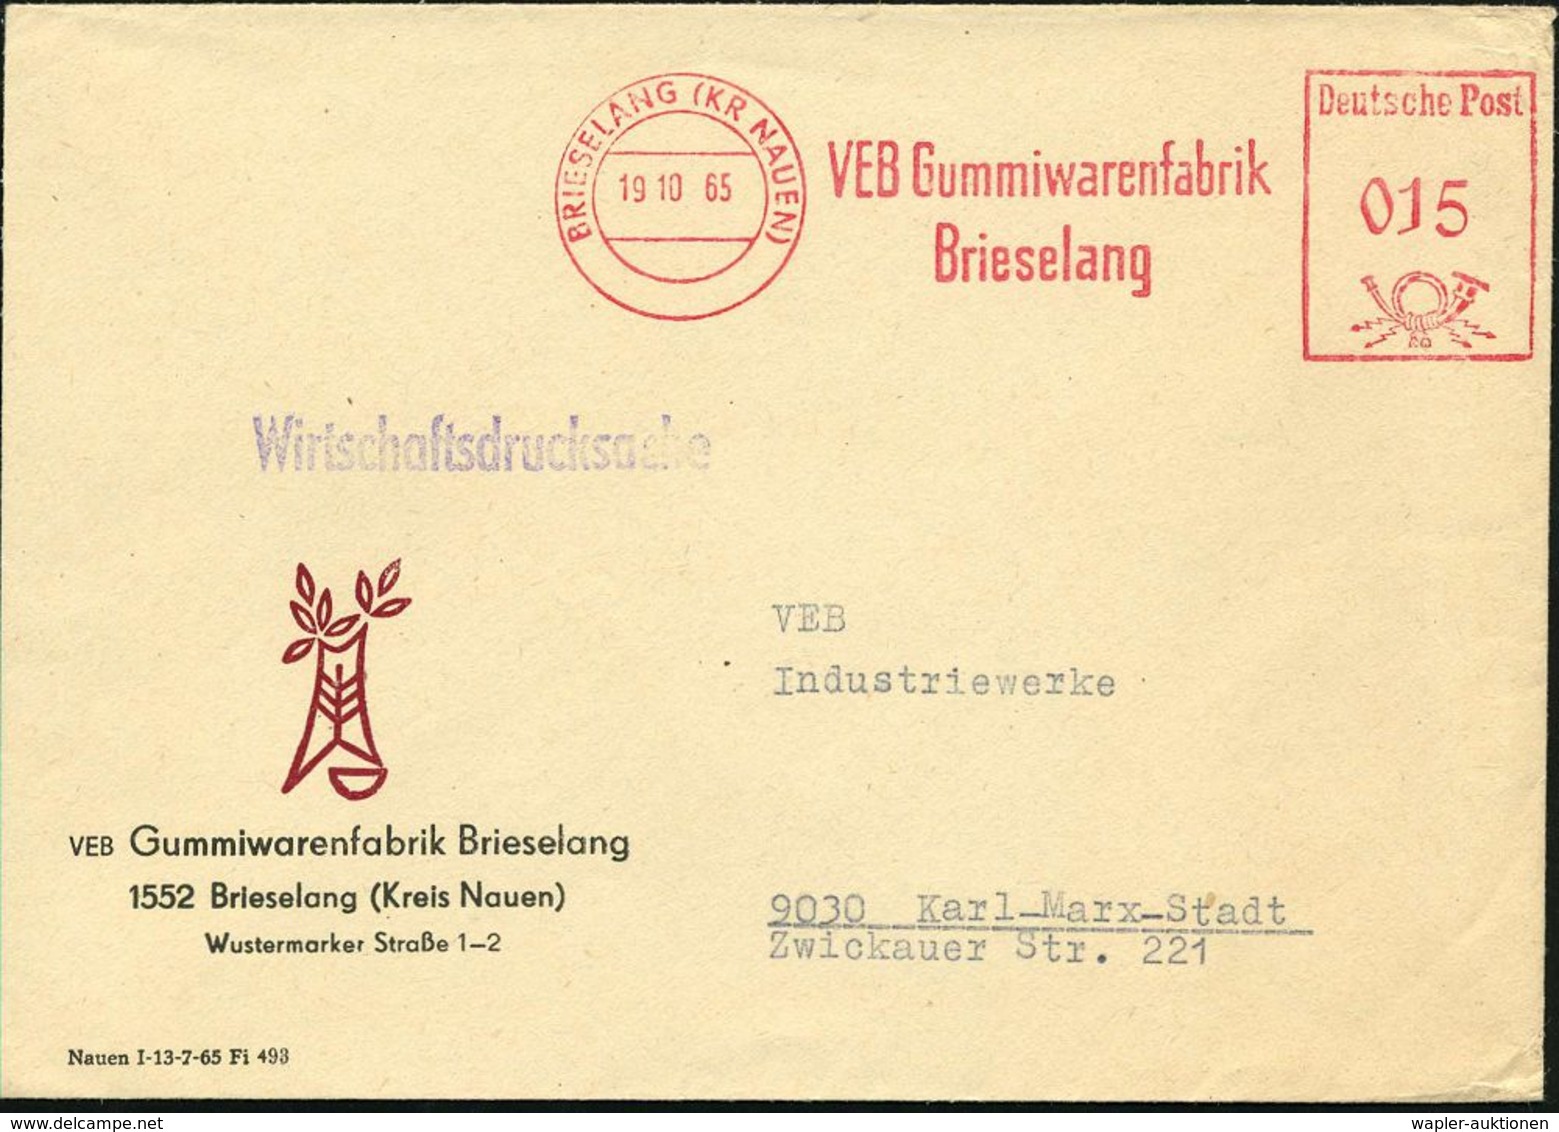 GUMMI / KAUTSCHUK : BRIESELANG (KR NAUEN)/ VEB Gummiwarenfabrik 1965 (19.10.) AFS Klar Auf Firmen-Bf.: VEB Gummiwarenfab - Chemistry